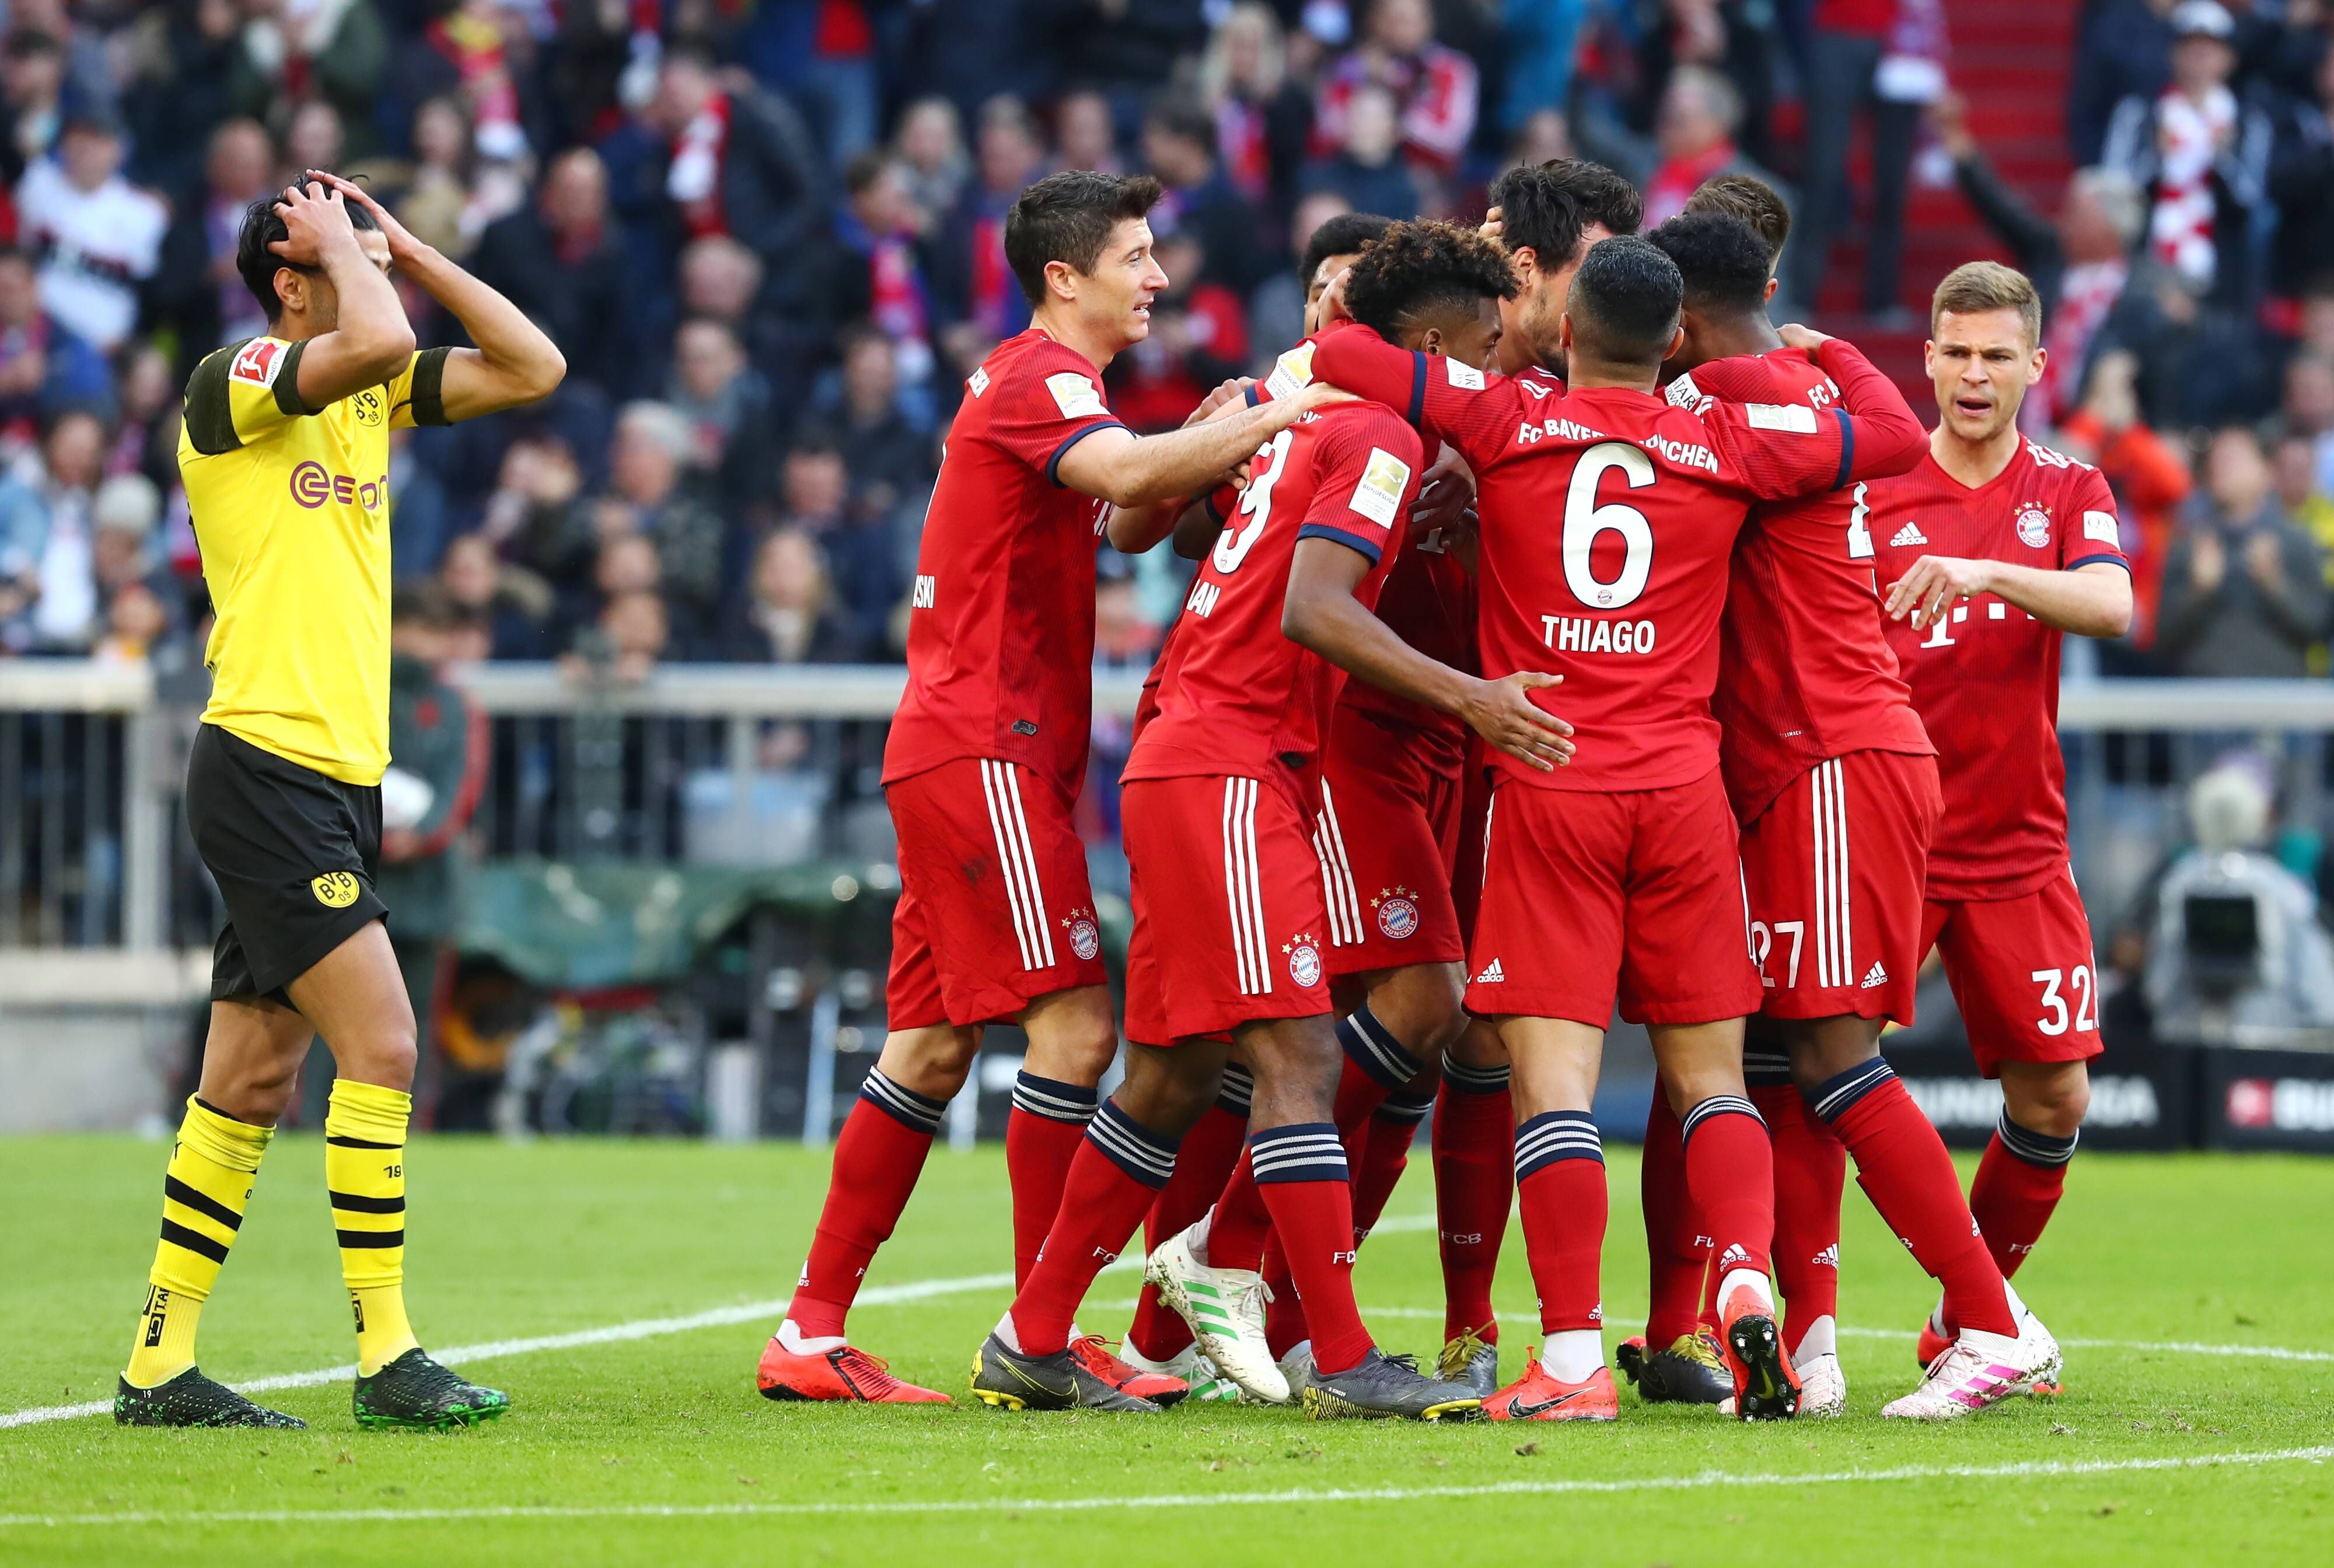 
                <strong>Ergebnis: 5:7 für den FC Bayern München</strong><br>
                Viele Head-to-Head-Duelle endeten sehr knapp – selbiges dürfte für den Supercup gelten. Insgesamt sehen wir im direkten Duell die Bayern leicht vorne. Doch wie heißt es so schön? Entscheidend ist auf dem Platz!
              